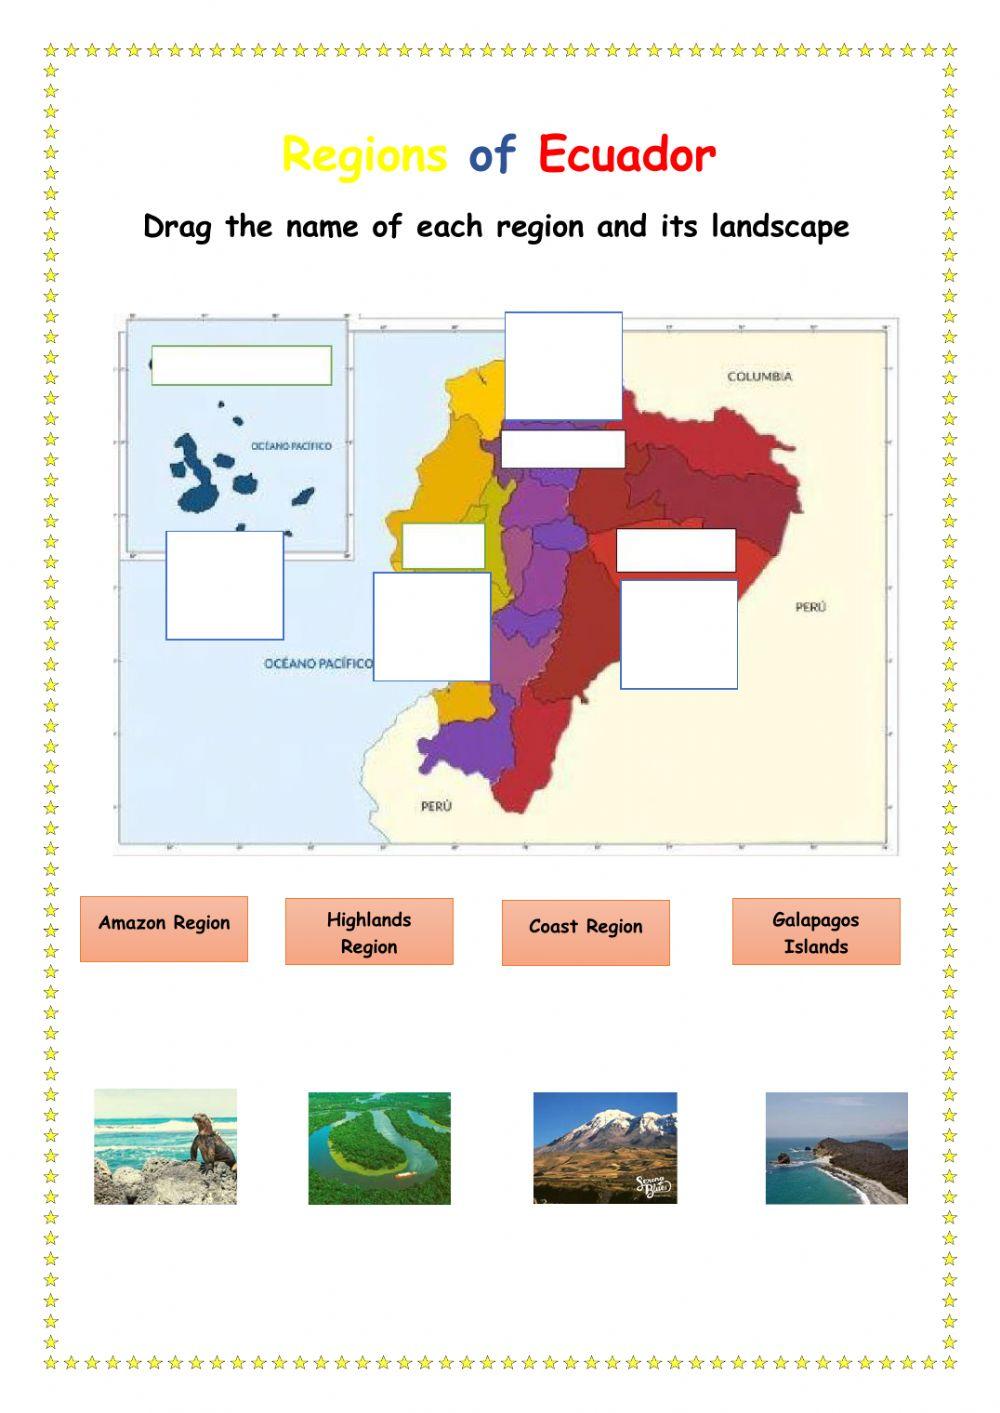 Ecuador and its regions